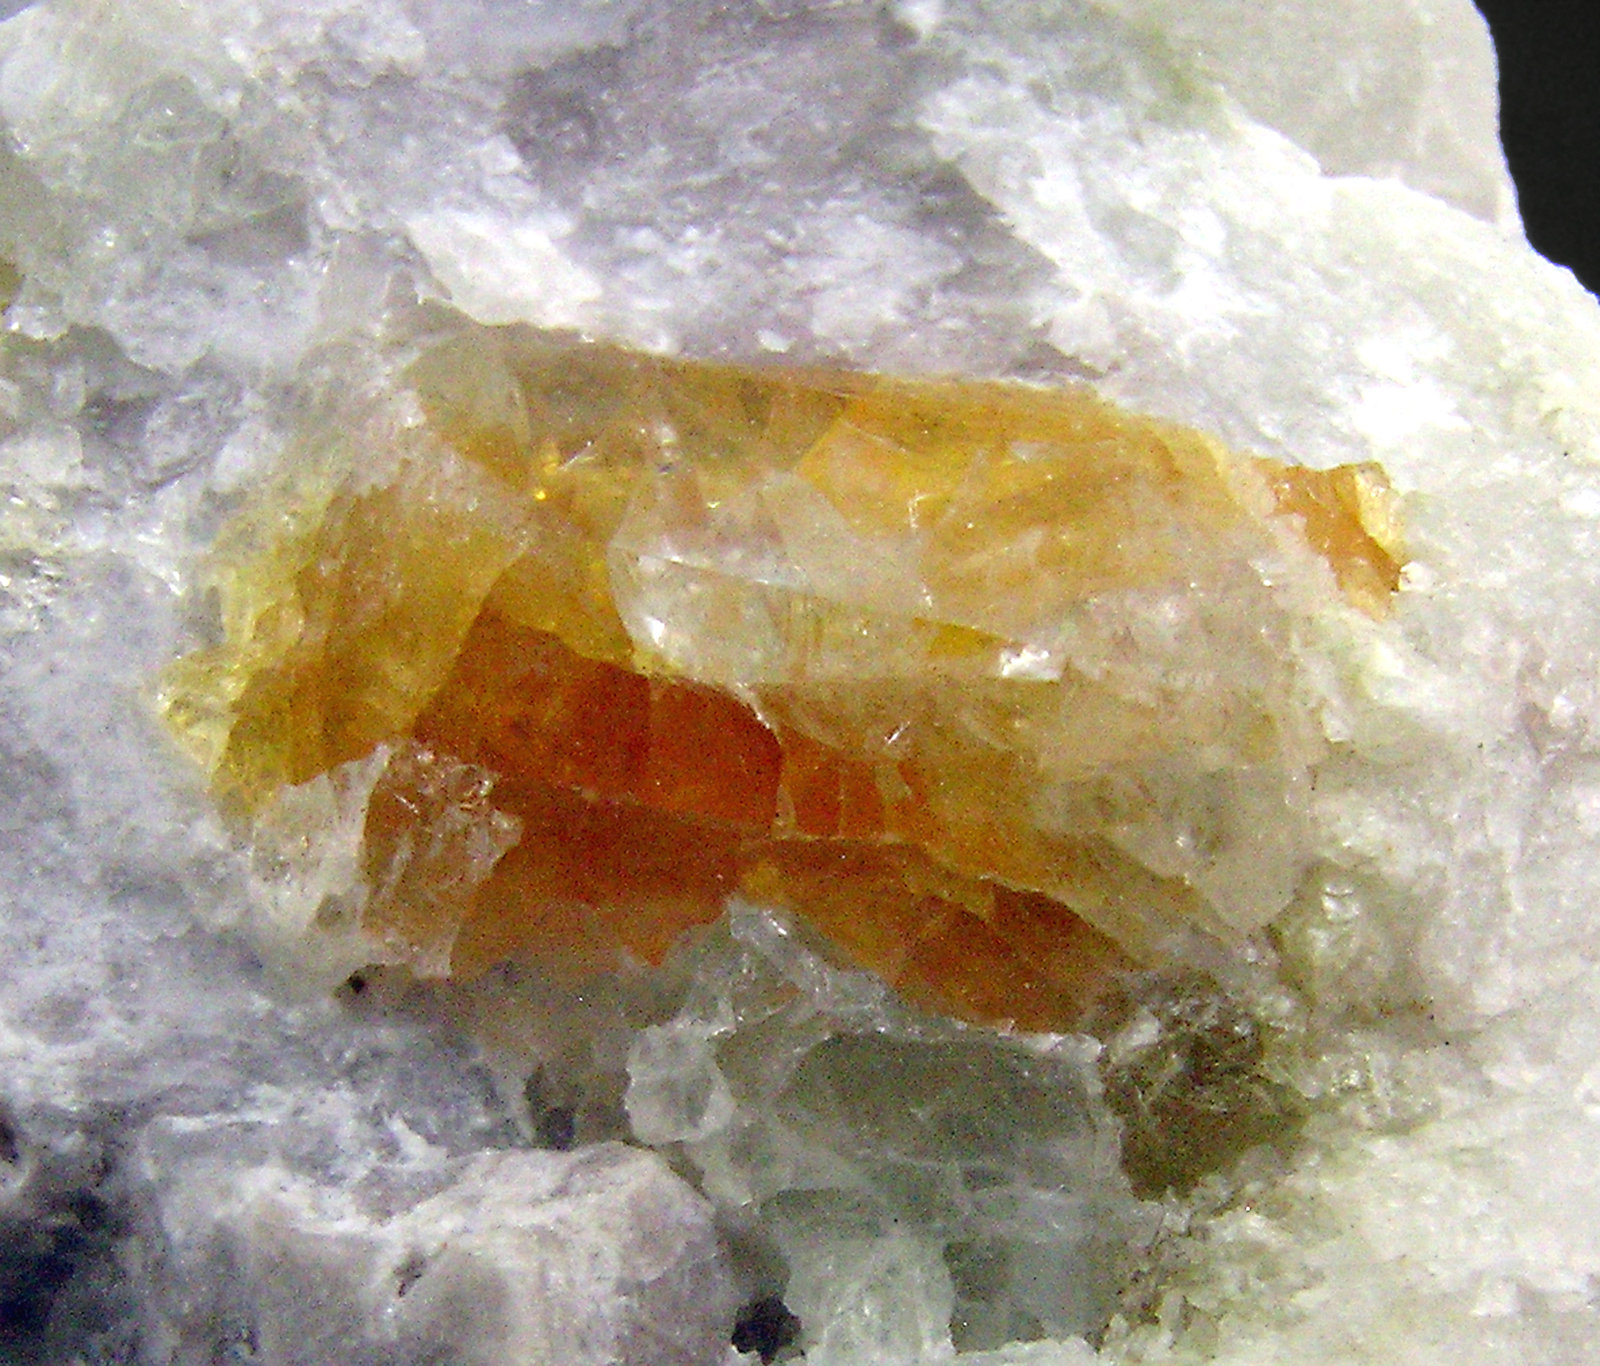 specimens/s_imagesN9/Johachidolite-ER7N9d.jpg